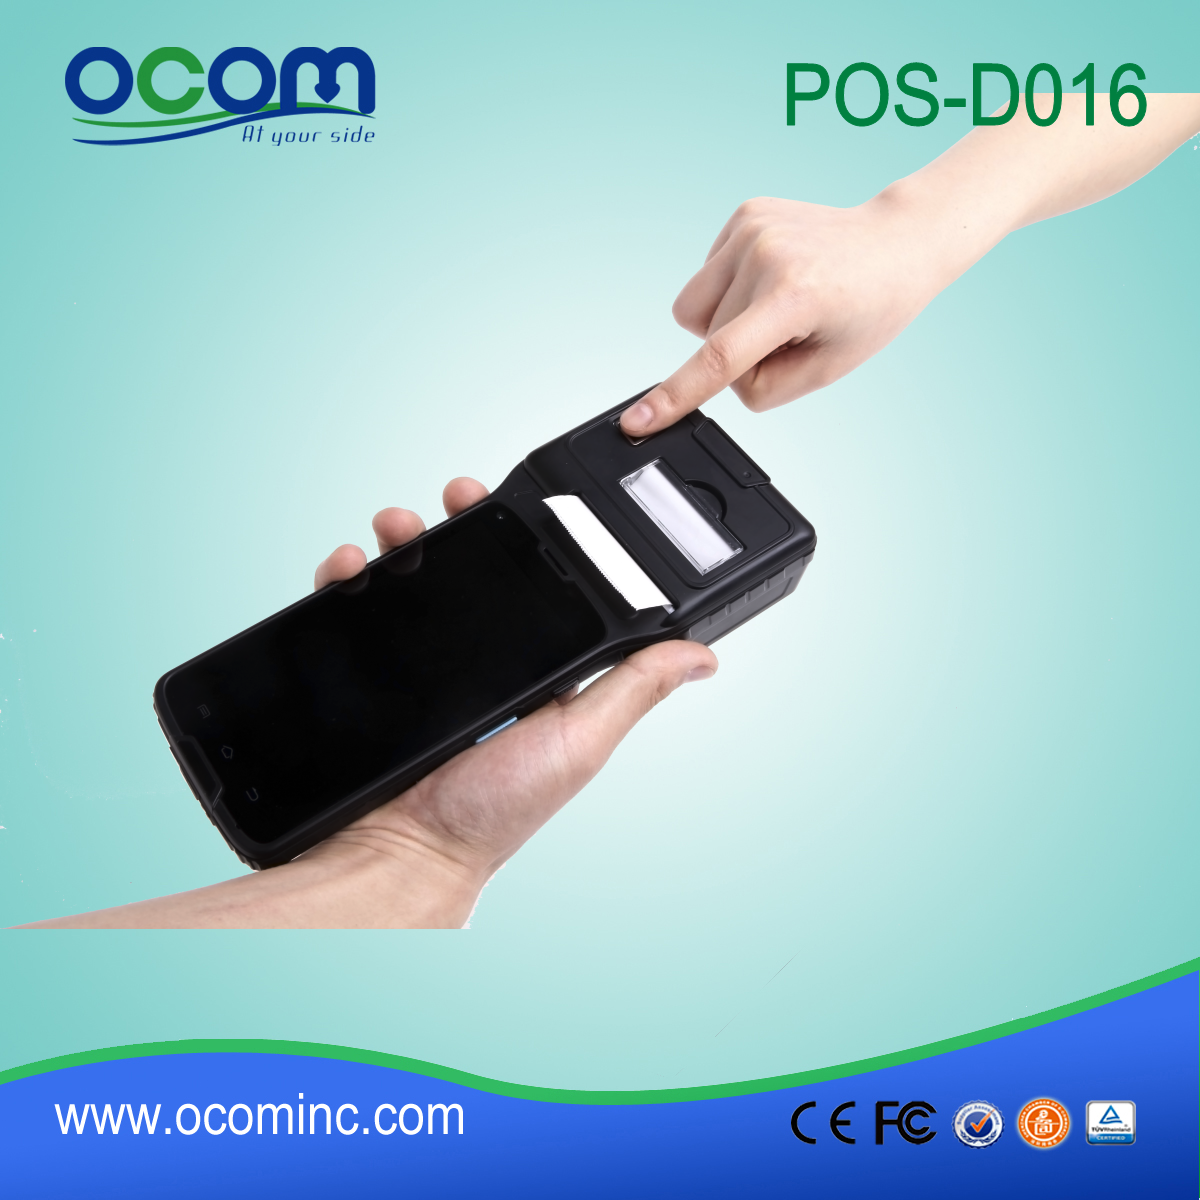 Portátil Android 4.2.2 terminal POS com Pos Impressora - OCBs-D016